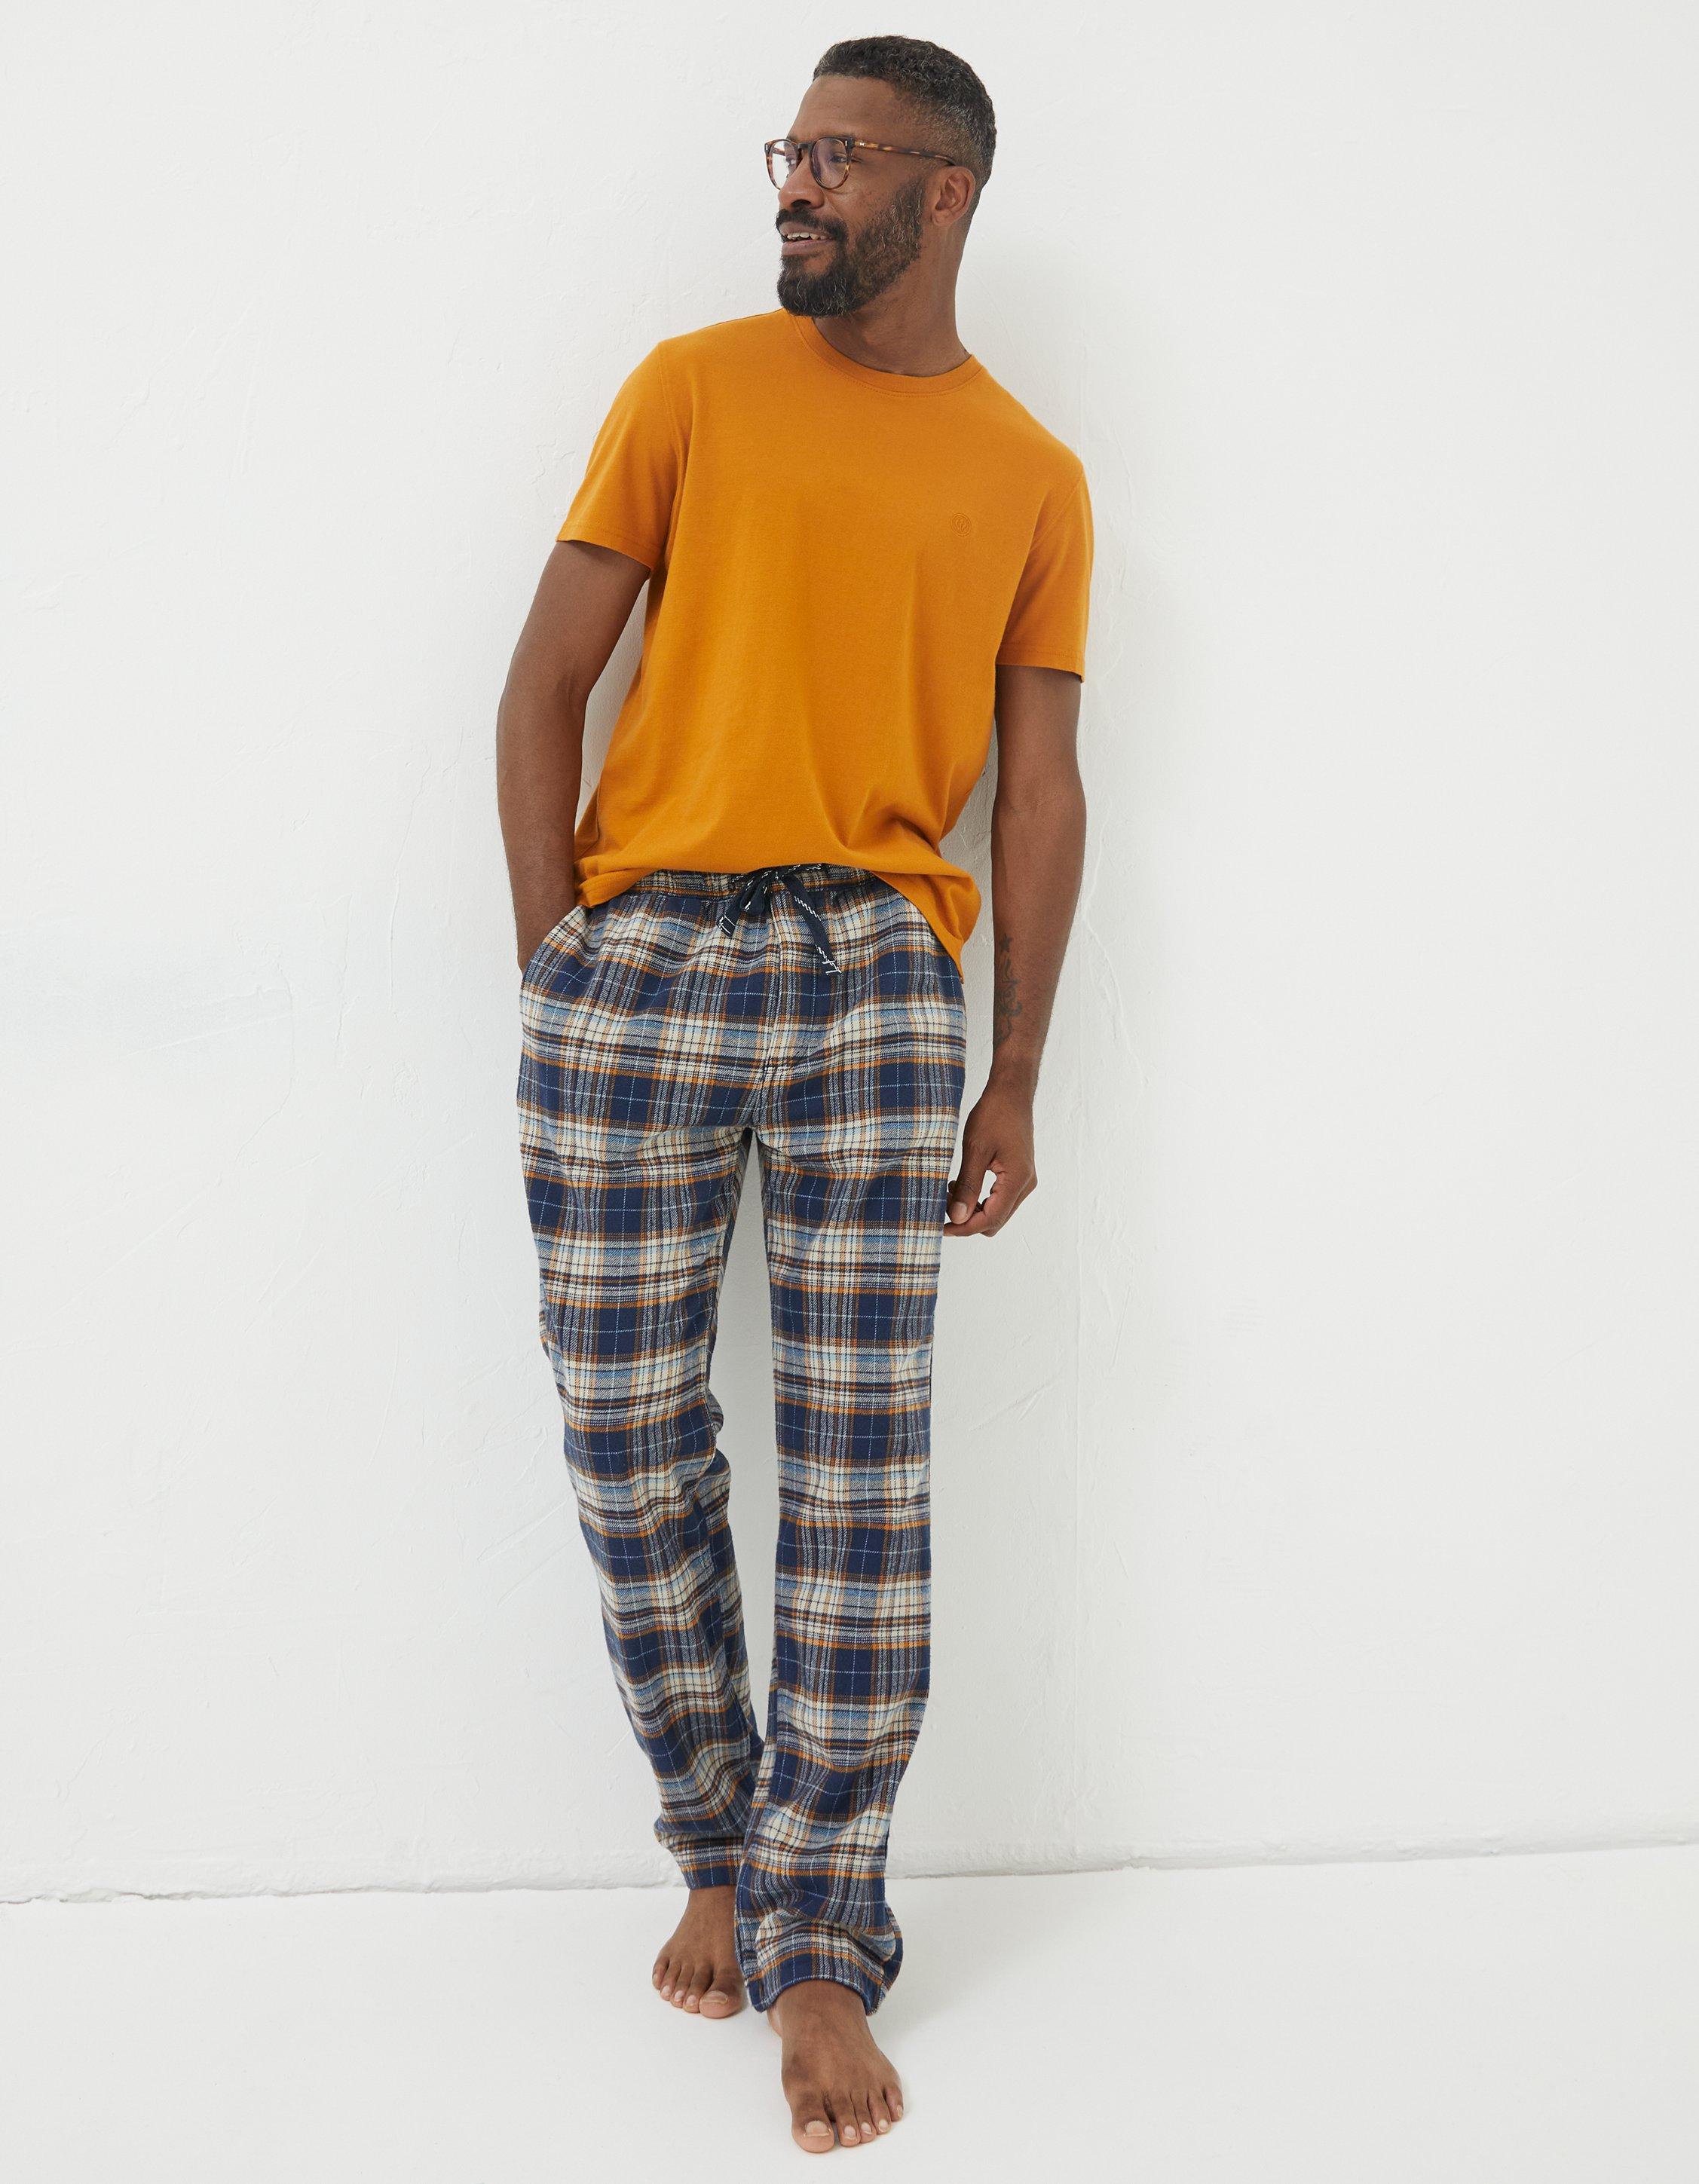 Pajamas & Slippers, Loungewear US